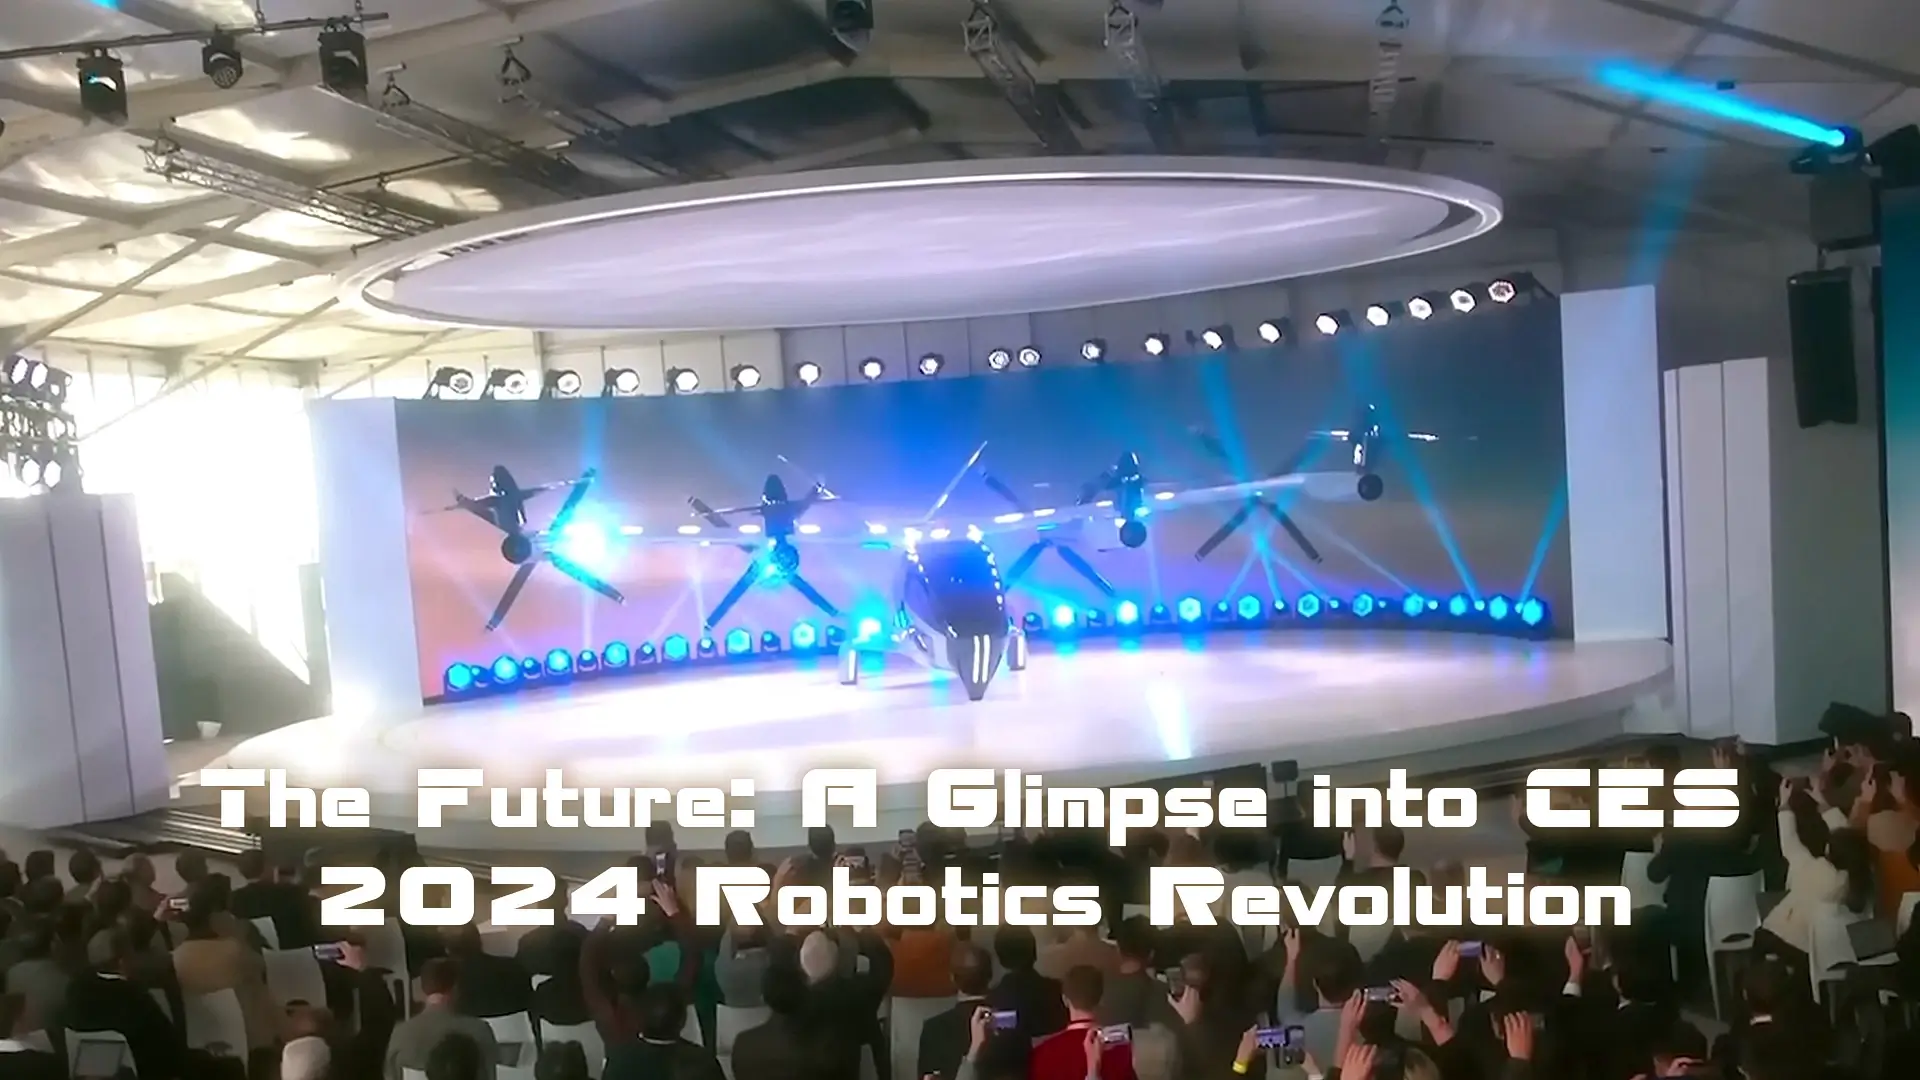 The Future: A Glimpse into CES 2024 Robotics Revolution